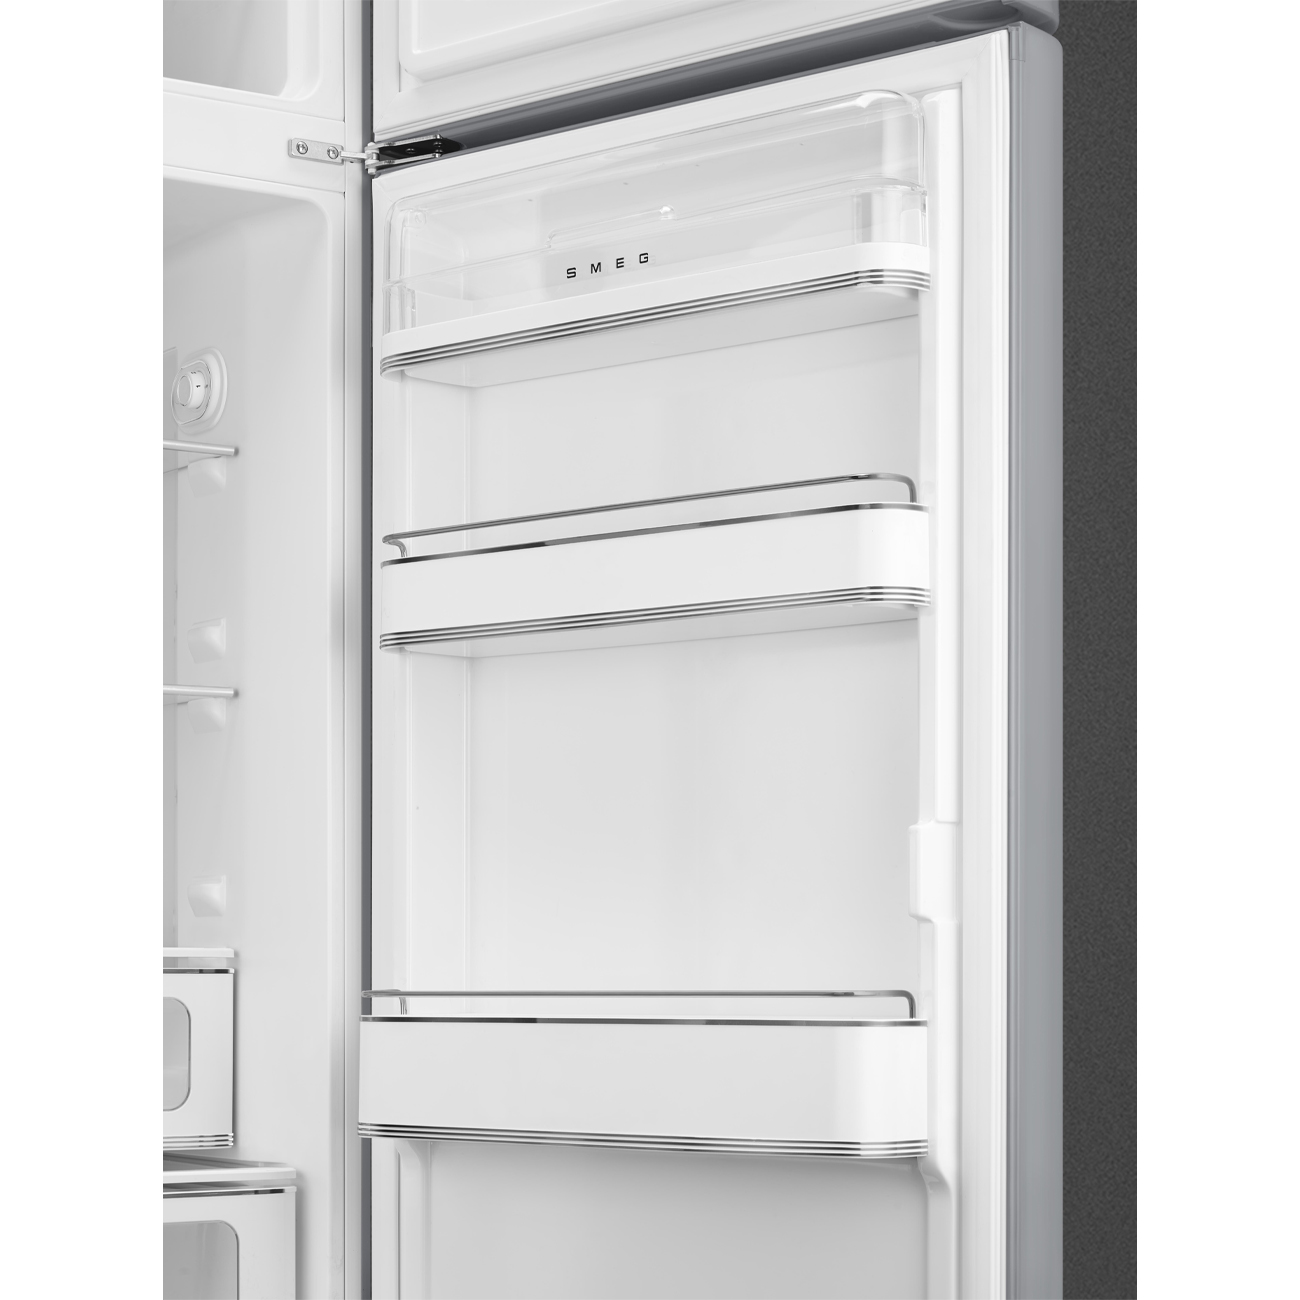 Silver refrigerator - Smeg_7